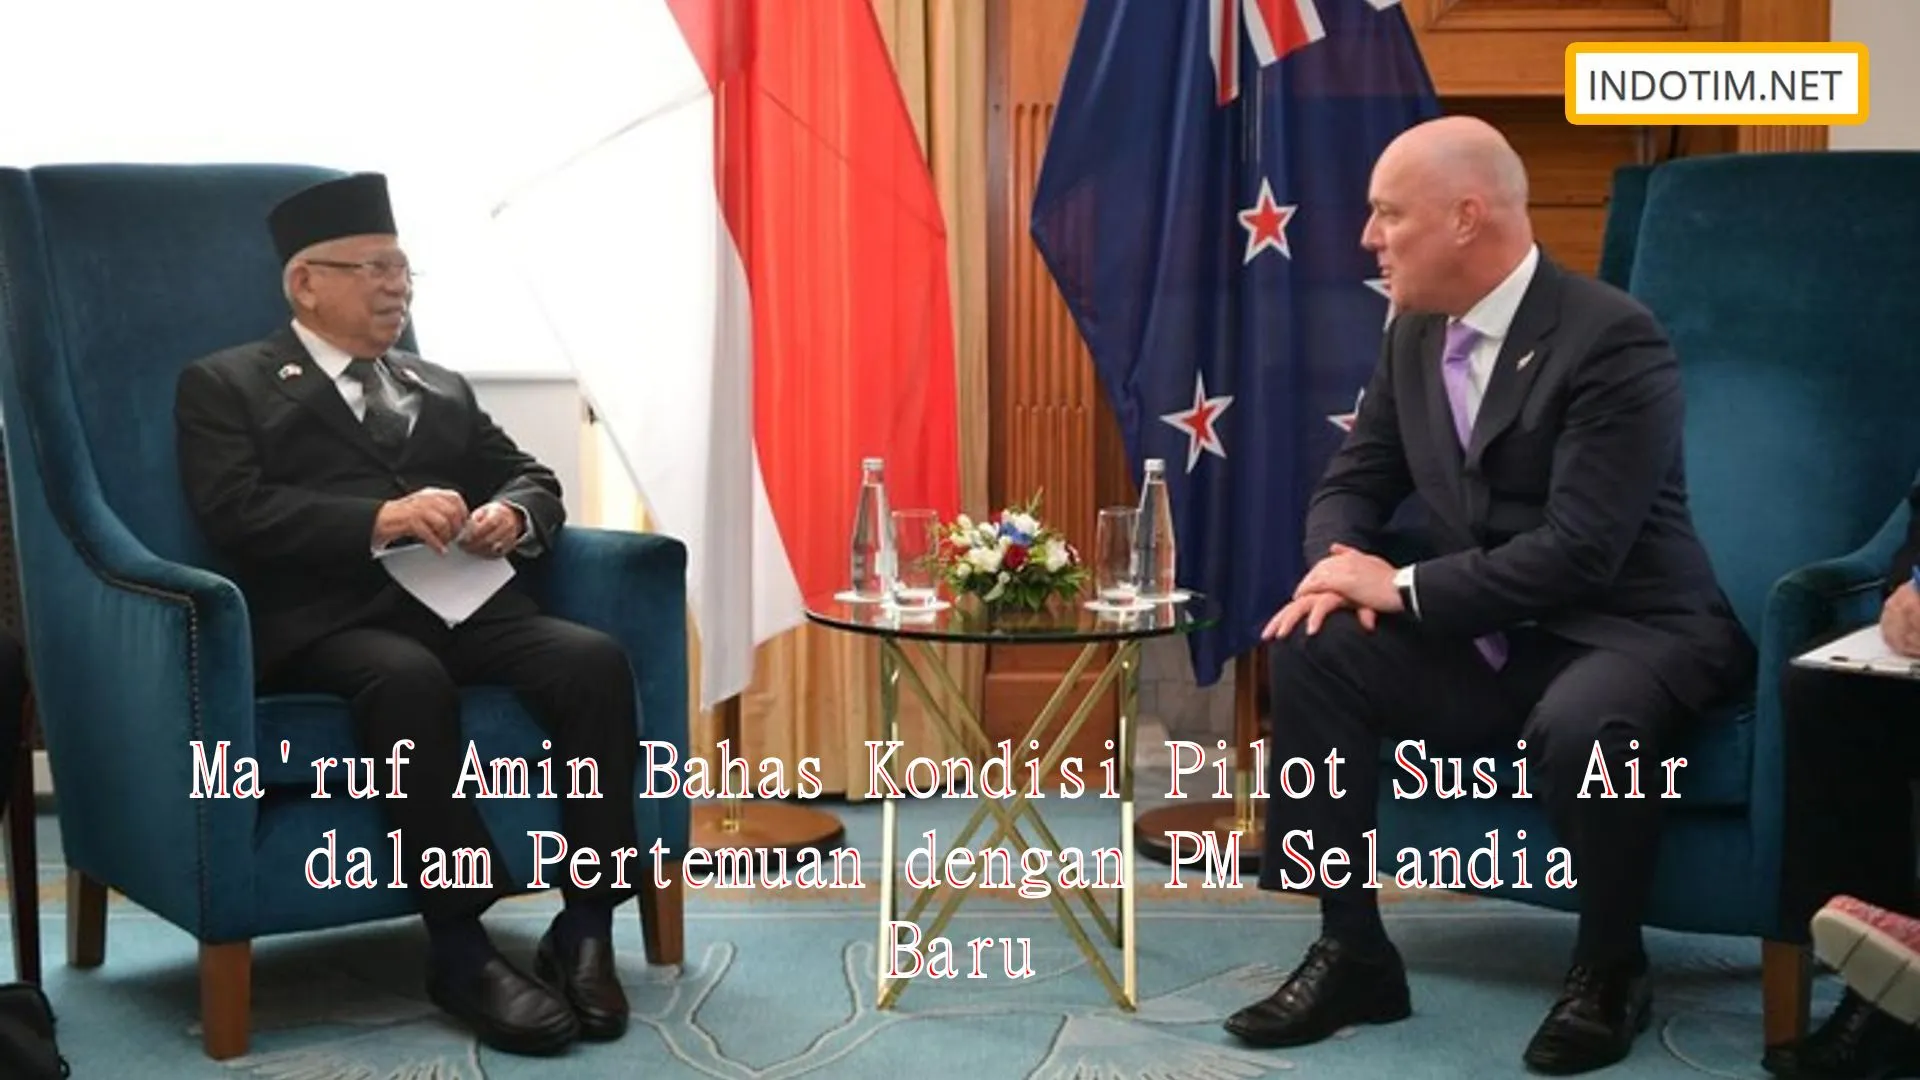 Ma'ruf Amin Bahas Kondisi Pilot Susi Air dalam Pertemuan dengan PM Selandia Baru